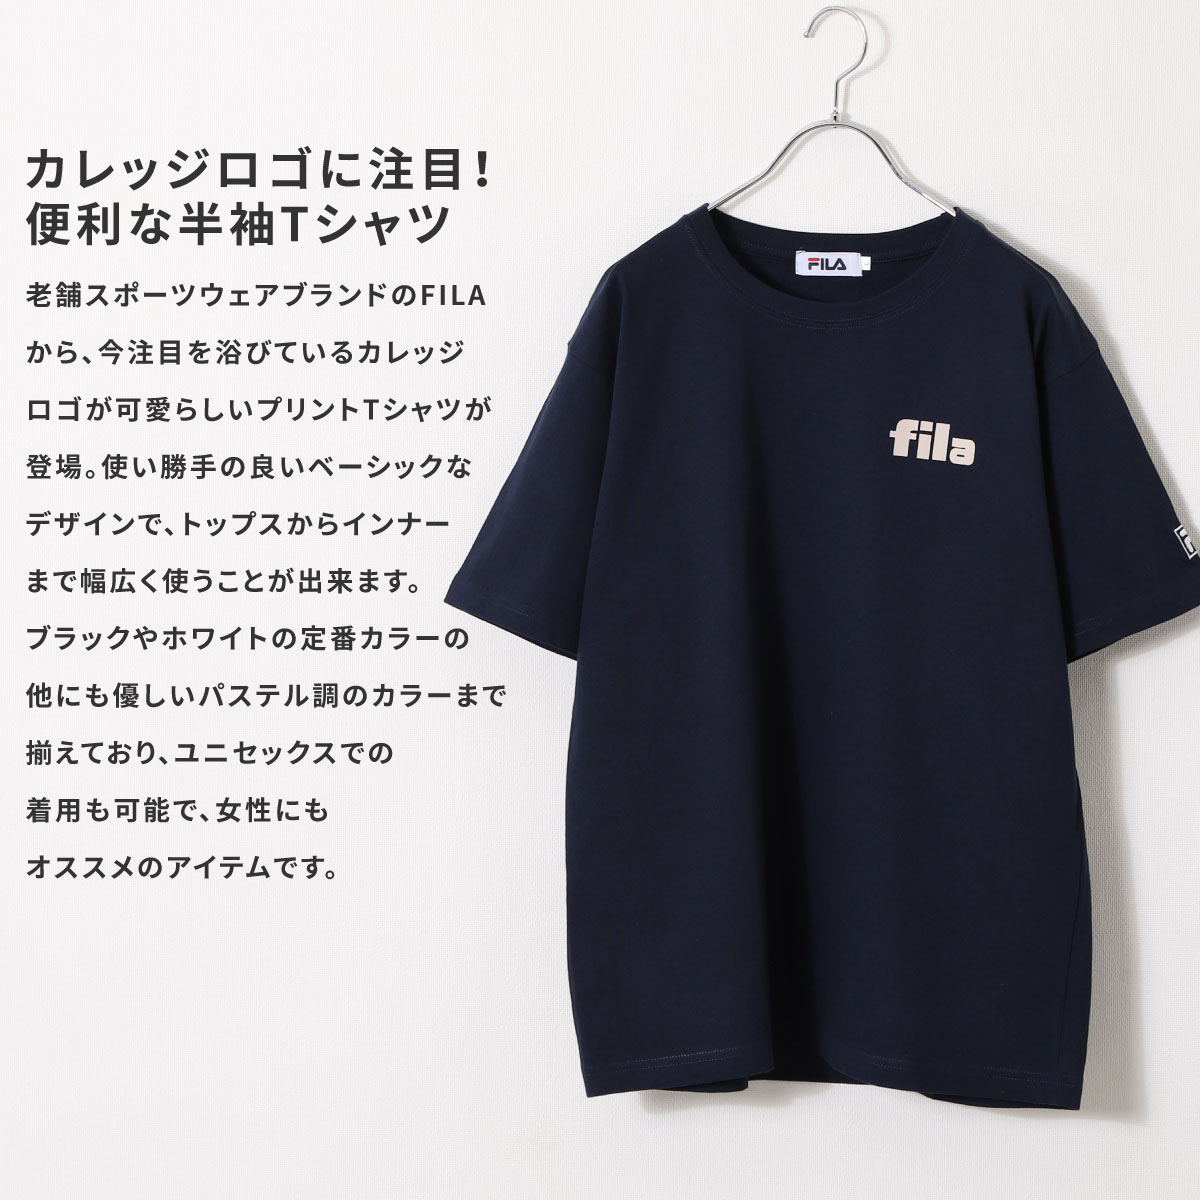 ☆決算特価商品☆ 【Navy】メンズ 半袖 Tシャツ シンプル ロゴ Tシャツ